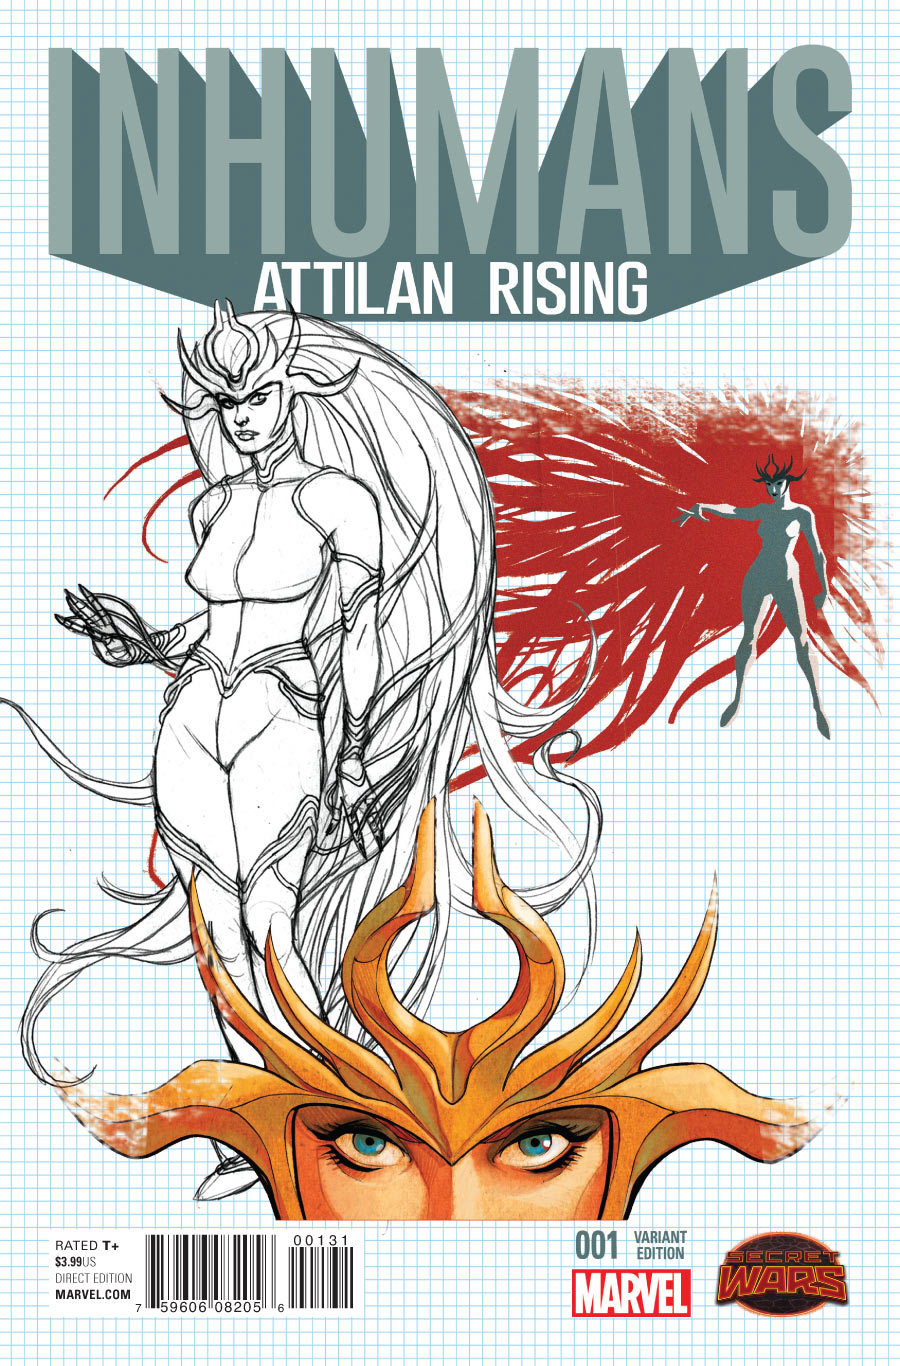 Inhumans: Attilan Rising #1